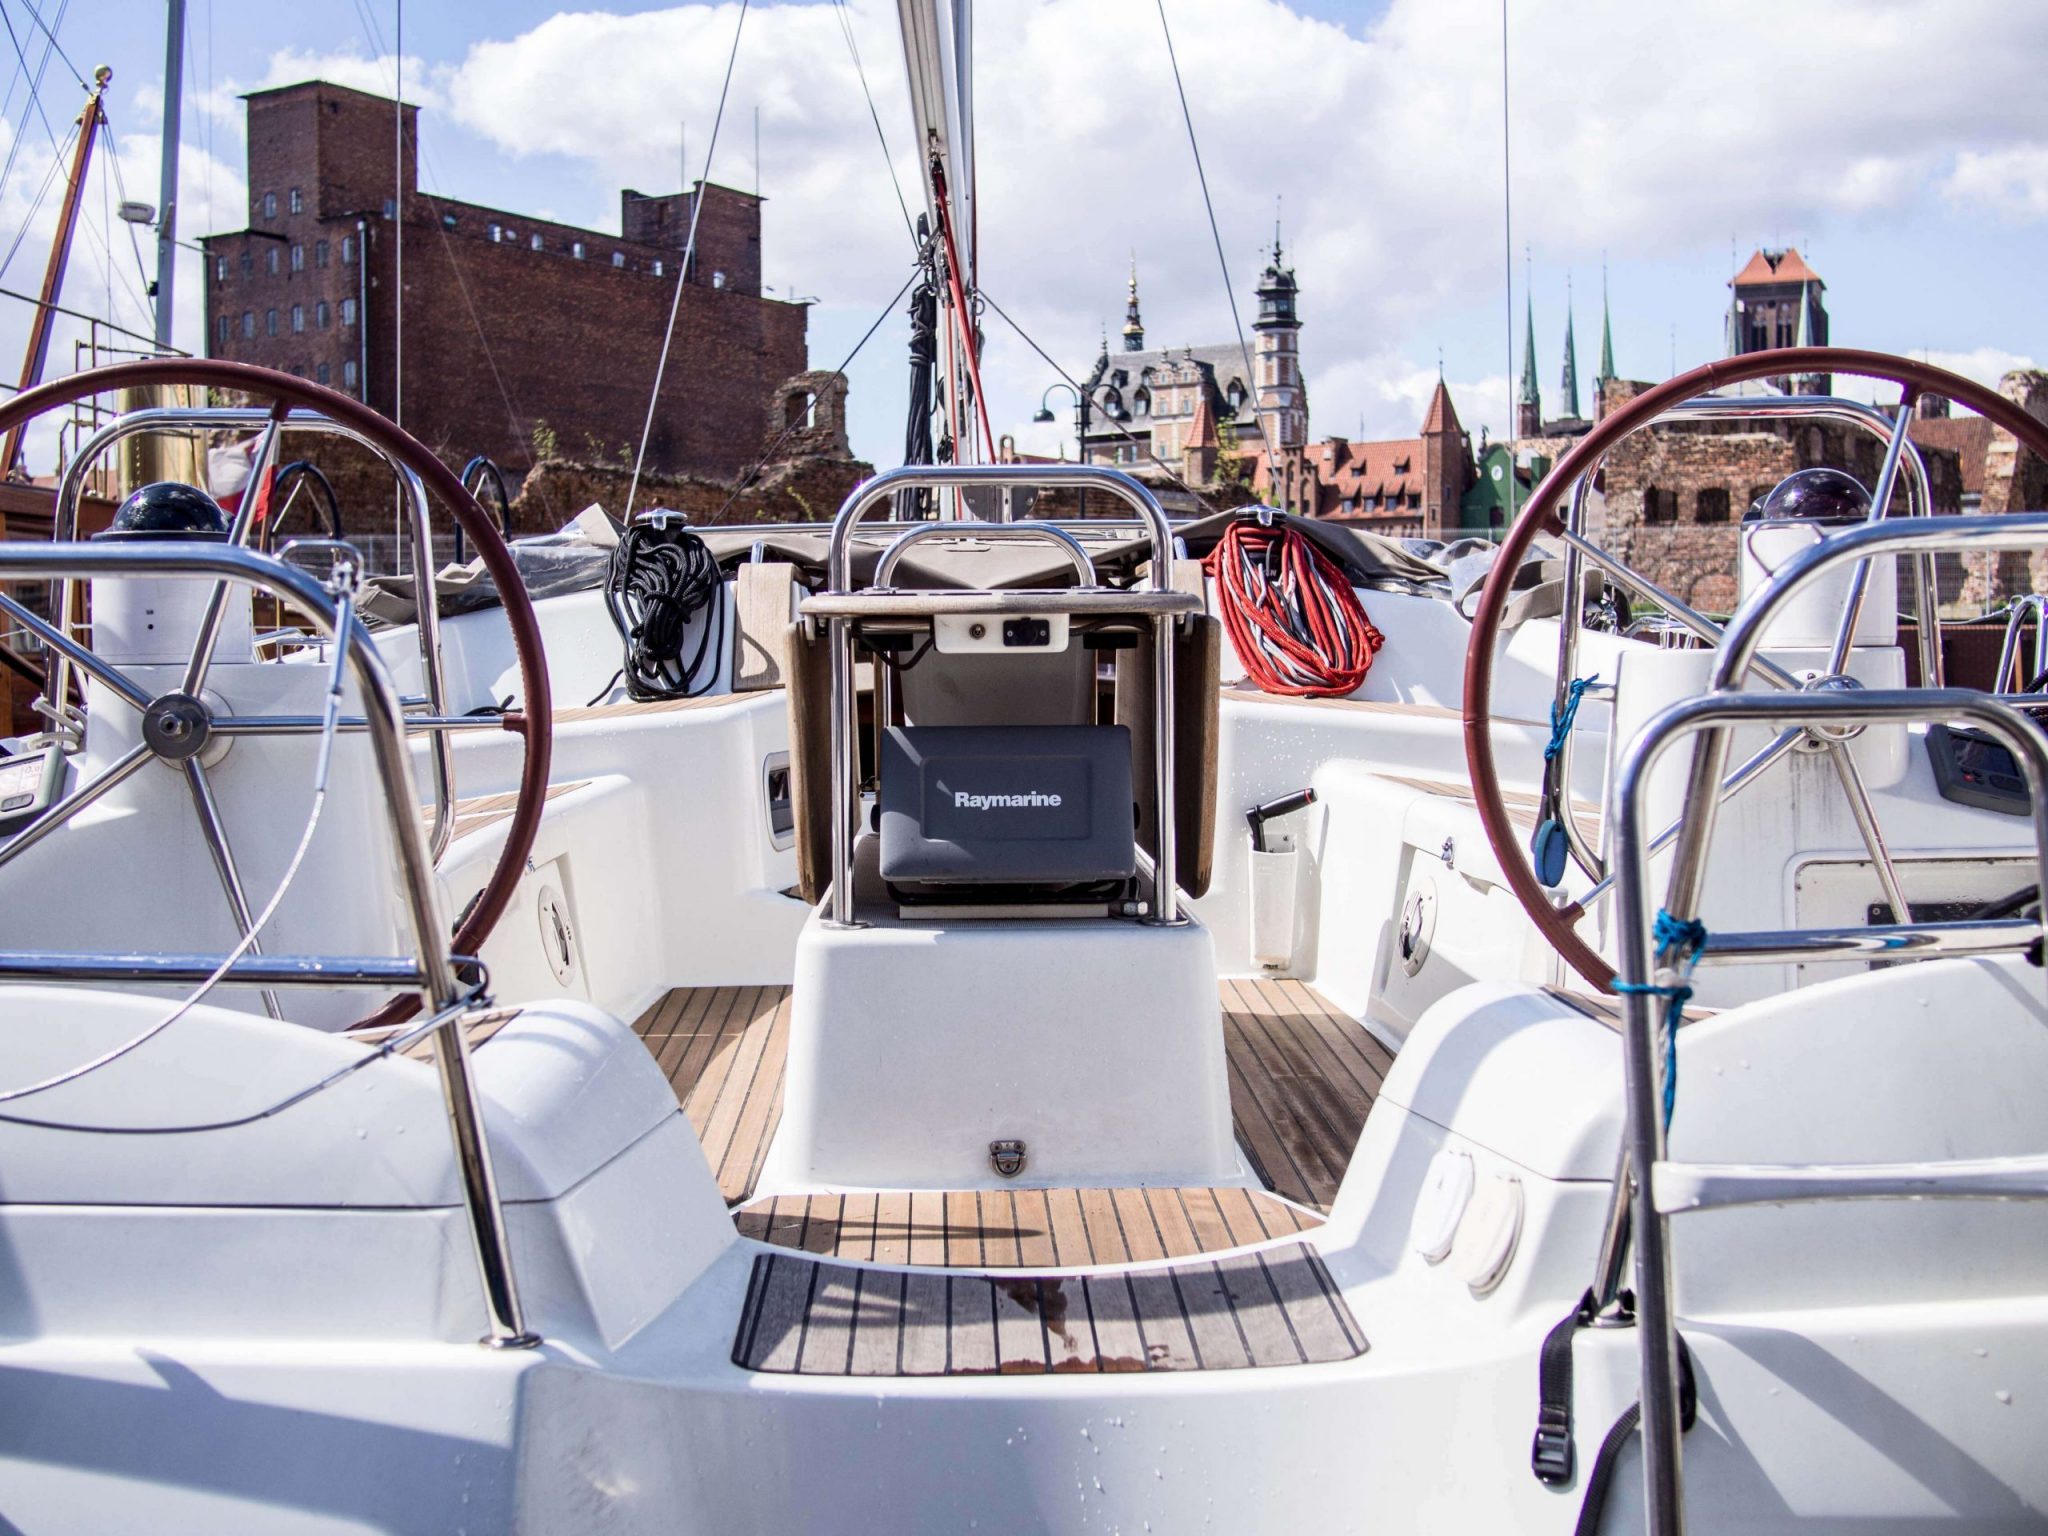 Volvo Gdynia Sailing Days6 wodne atrakcje 17 scaled - Pomorskie z wody